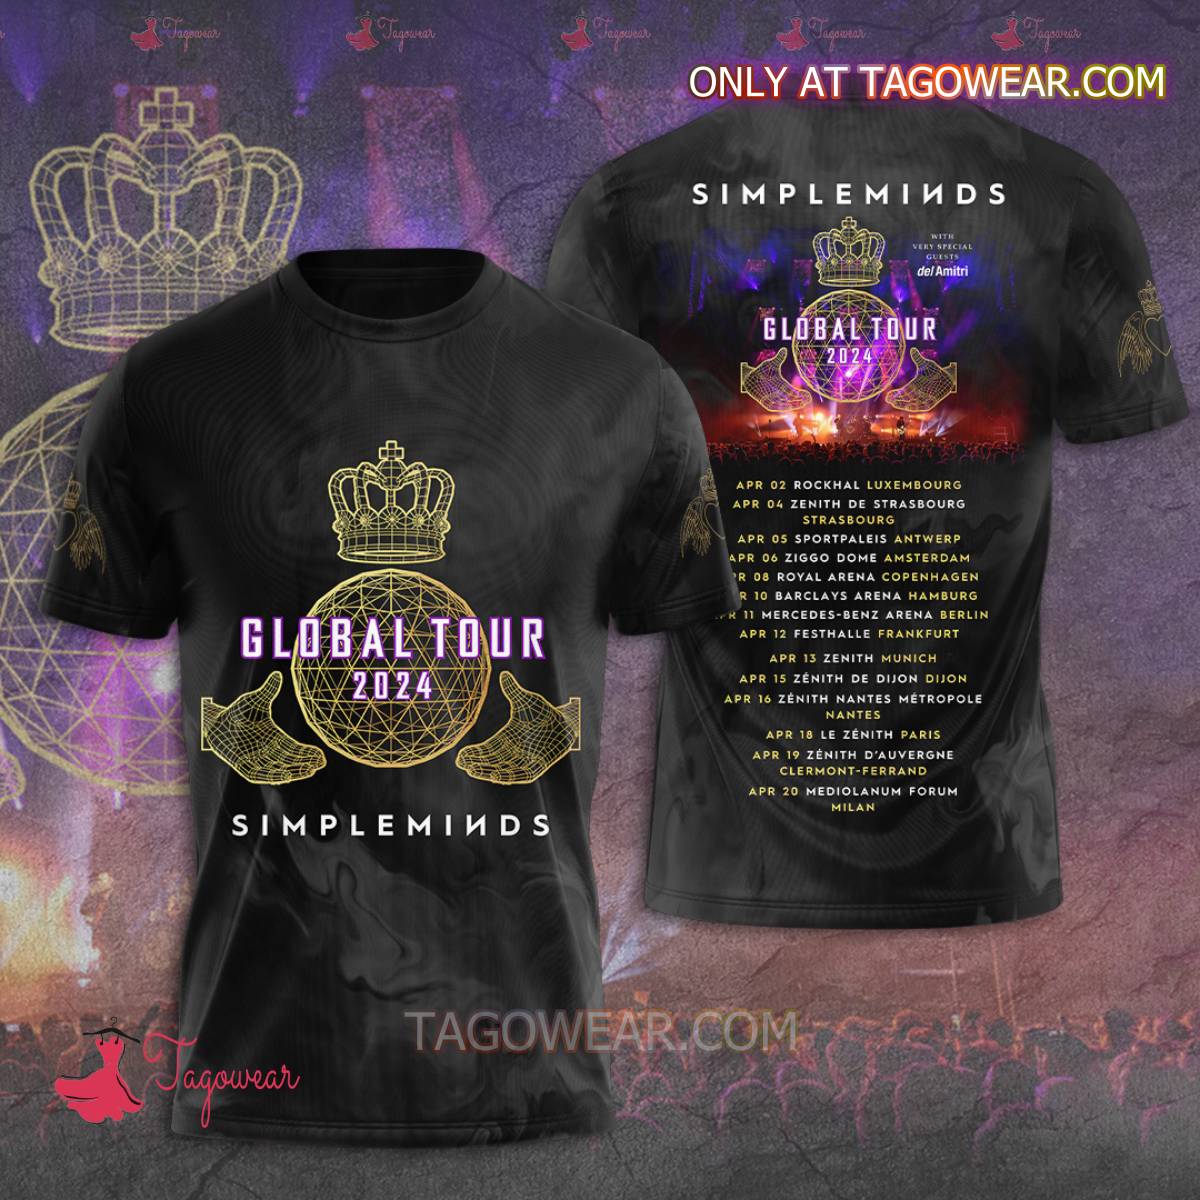 Simple Minds Global Tour 2024 Tshirt, Hoodie Tagowear